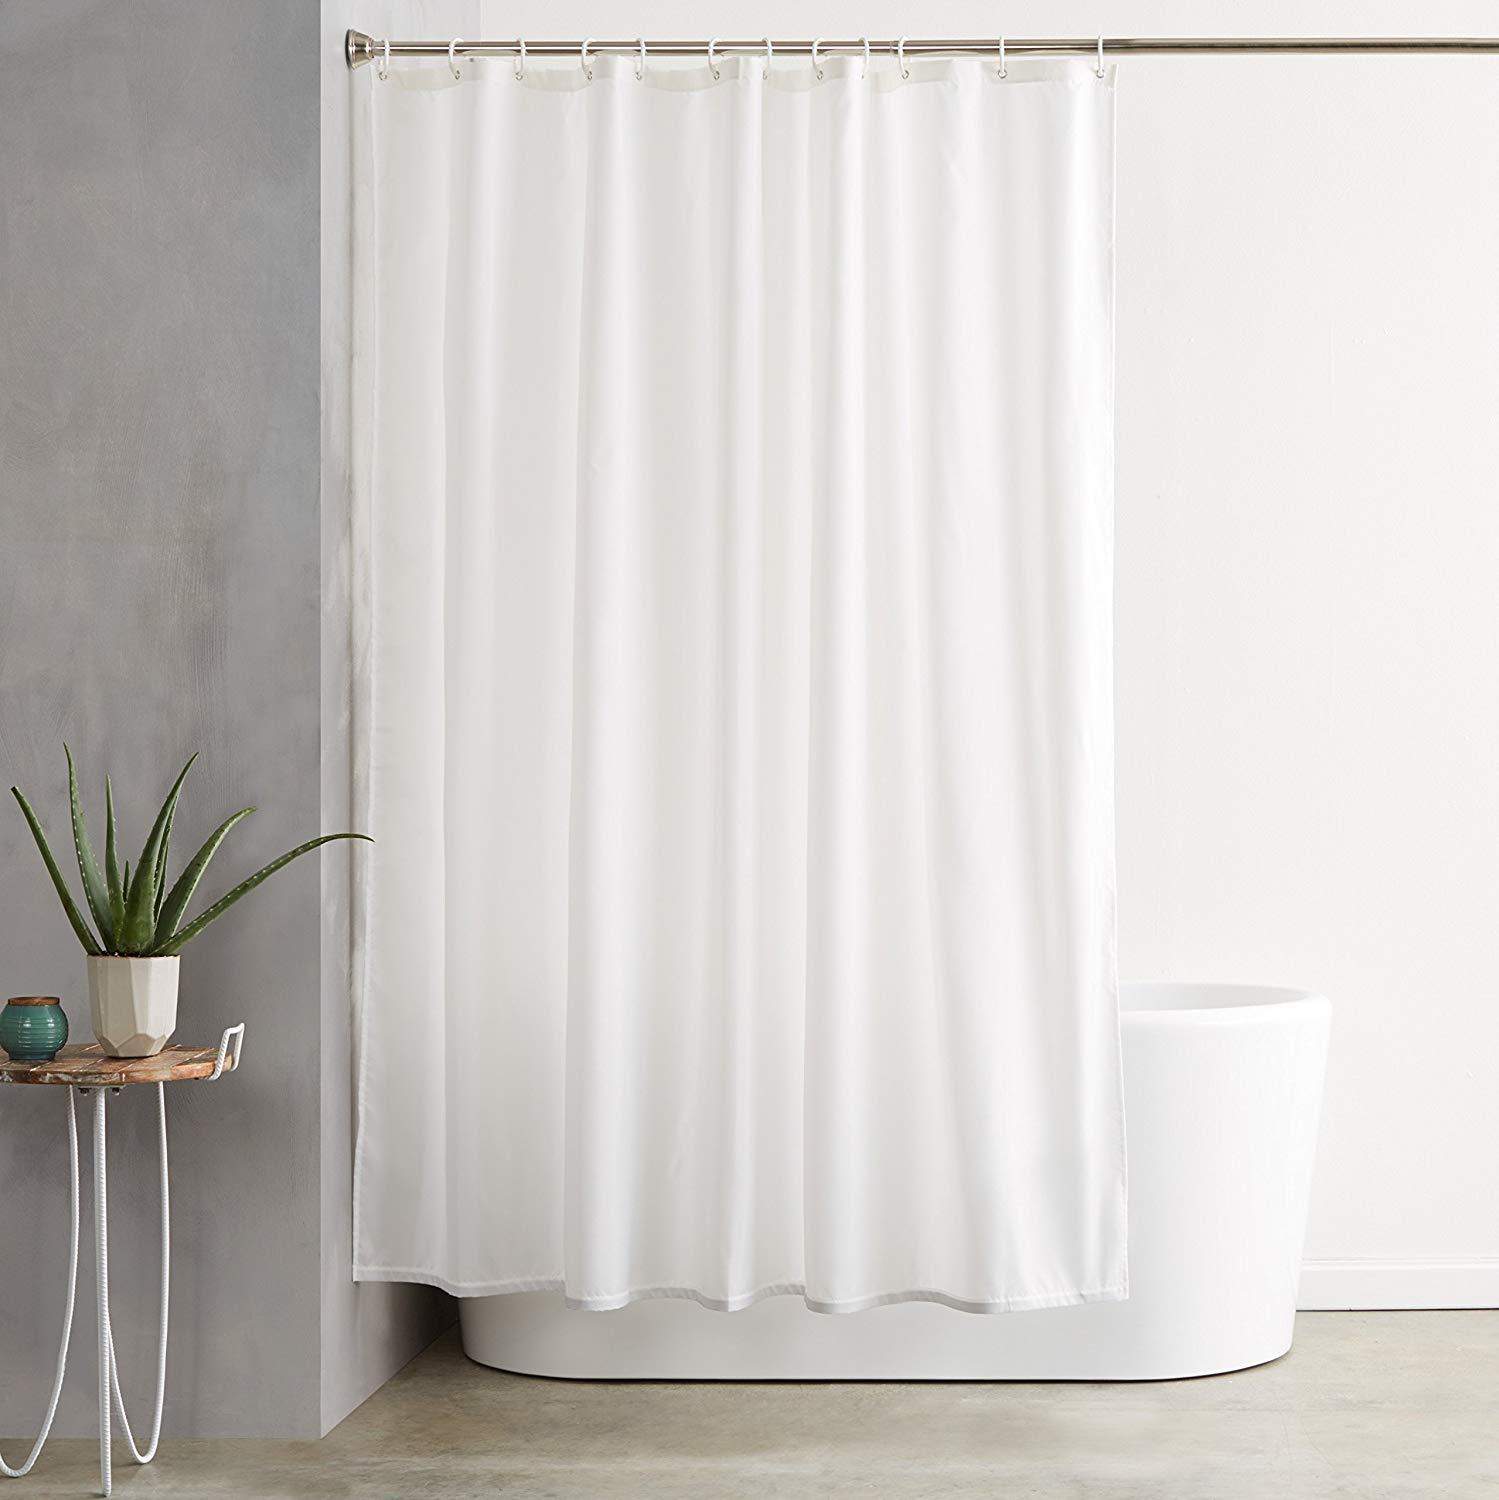 Luxury White Shower Curtains Shower Curtains 100% Polyester BedandbathLinen